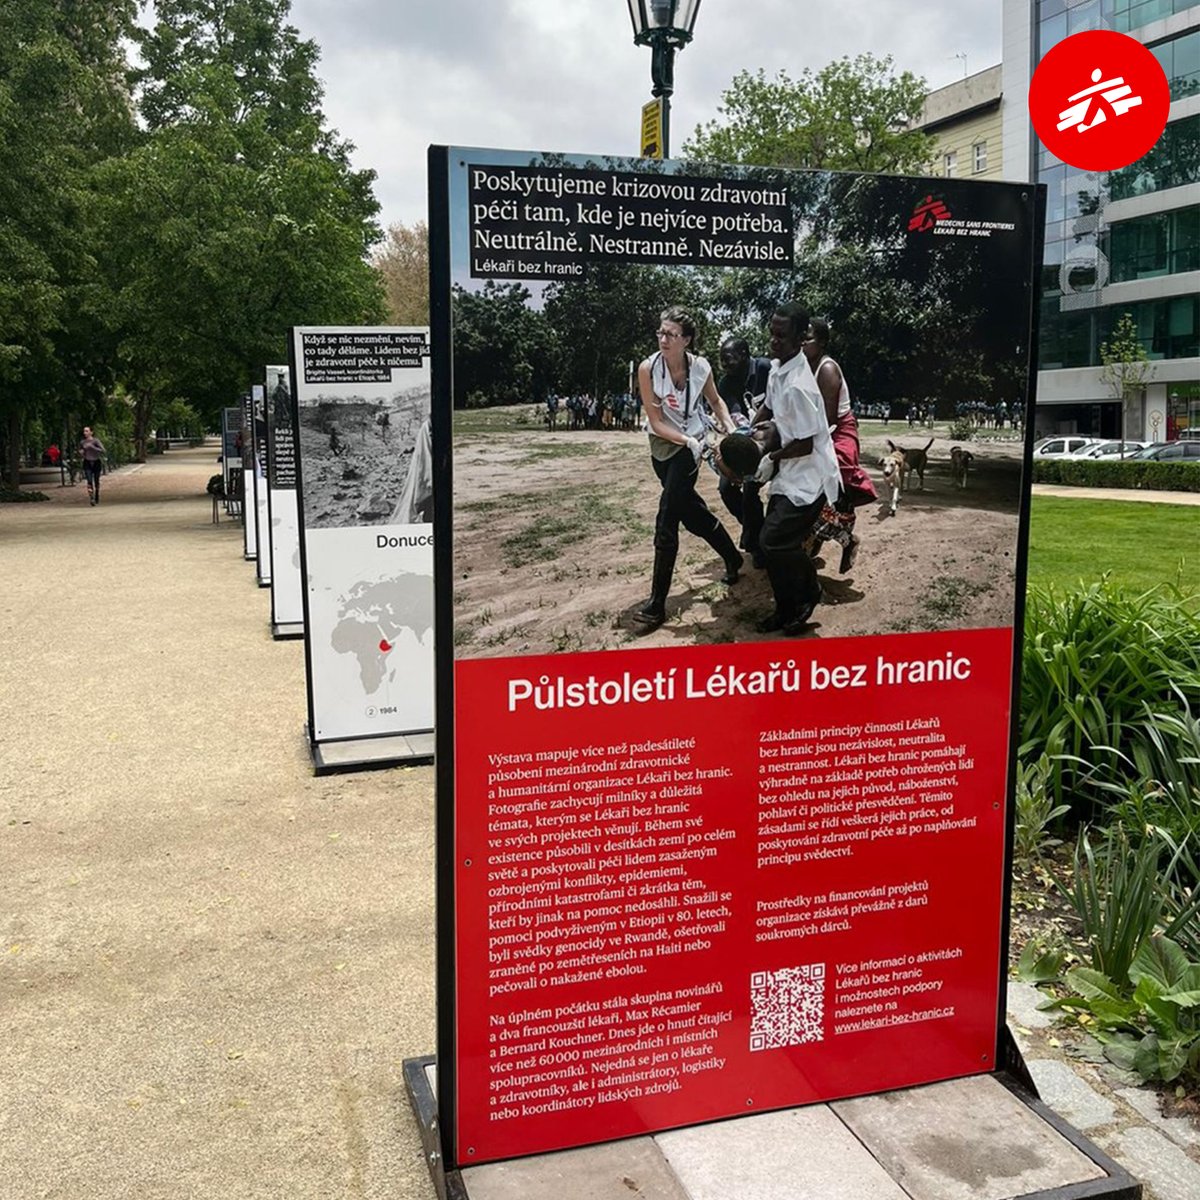 Už zase nás můžete vidět v ulicích! Výstava, která zachycuje 50 let naší práce po celém světě, je k vidění v Křižíkových sadech v Plzni od 7. do 29. května 2024. ❤️

📷 #lekaribezhranic